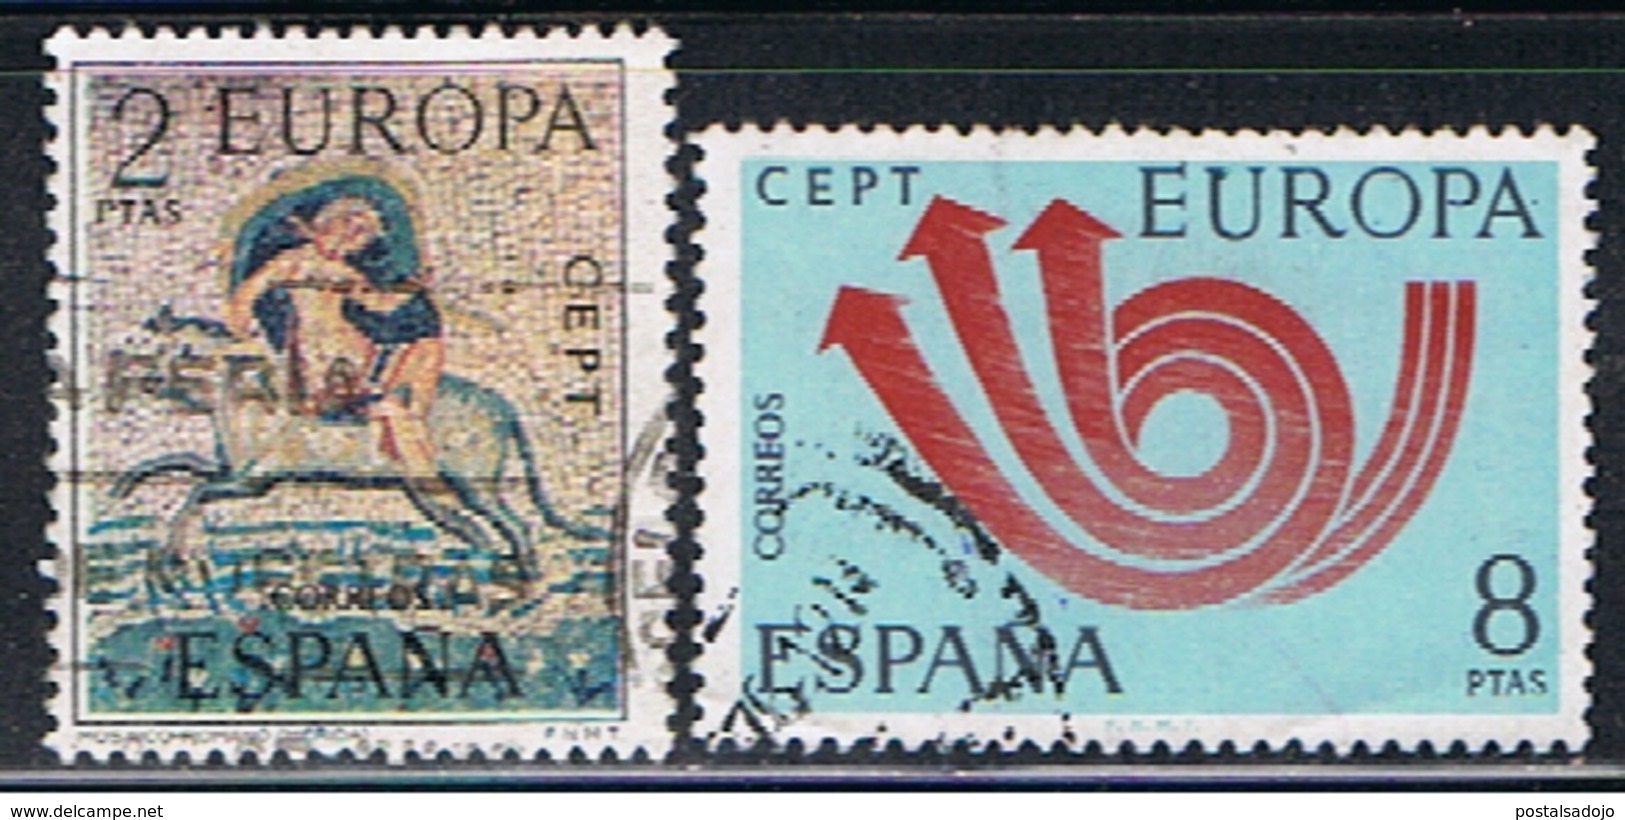 (2E 442) ESPAÑA // YVERT 1779, 1780  // EDIFIL   2125, 2126 //  1973 - Usados